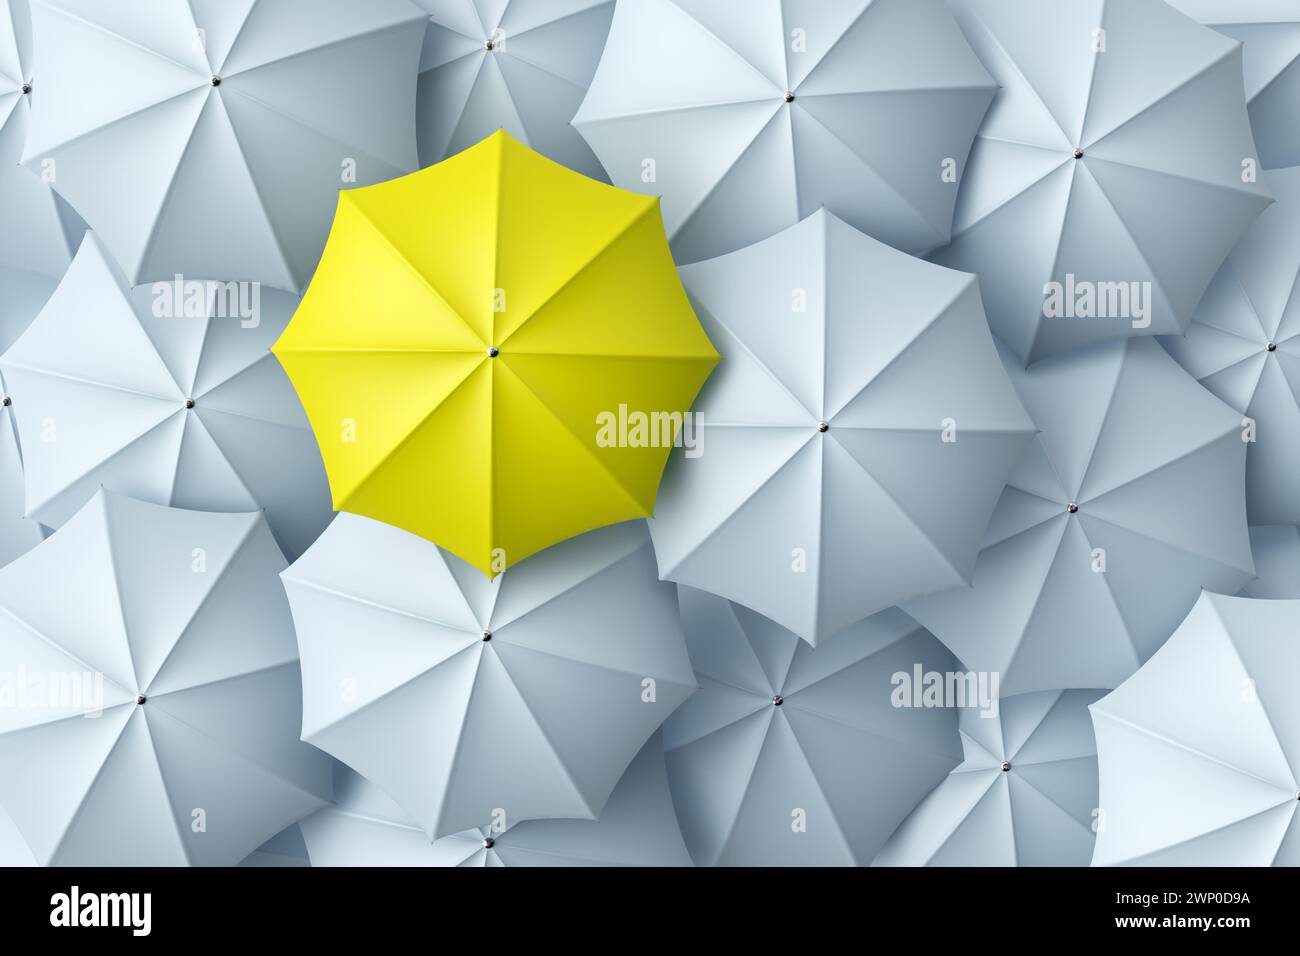 Parapluie jaune se détachant de la foule des parapluies blancs. Individualité, différence, leadership et concepts de lutte. Vue de dessus. Rendu 3D. Banque D'Images